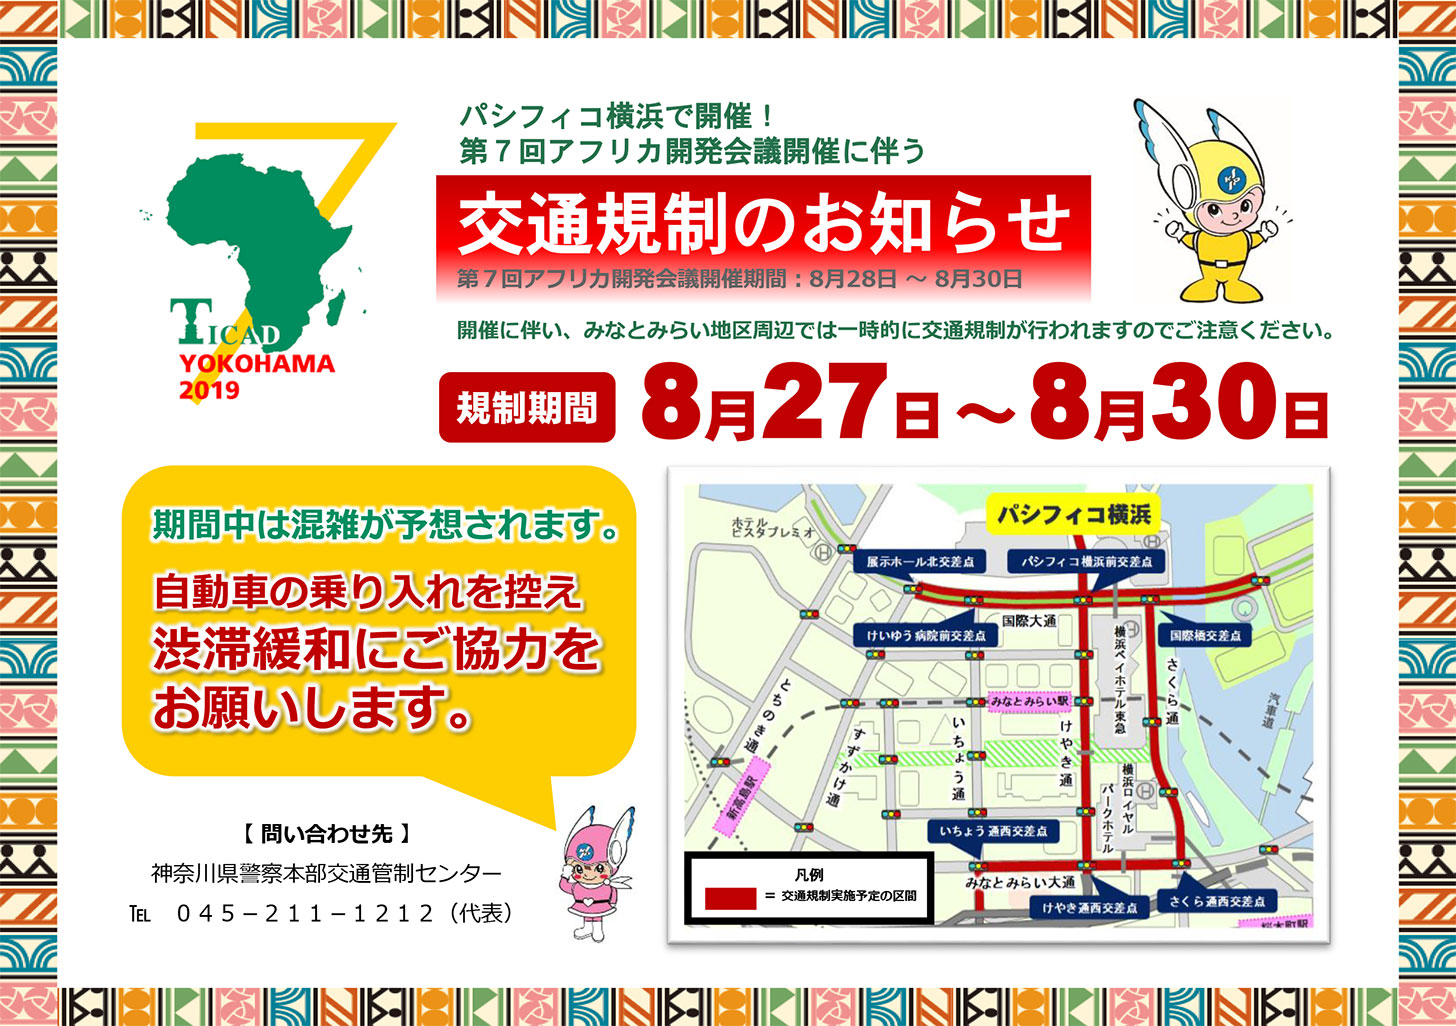 2019年8月27日から30日までみなとみらい・パシフィコ横浜周辺でアフリカ開発会議により交通規制